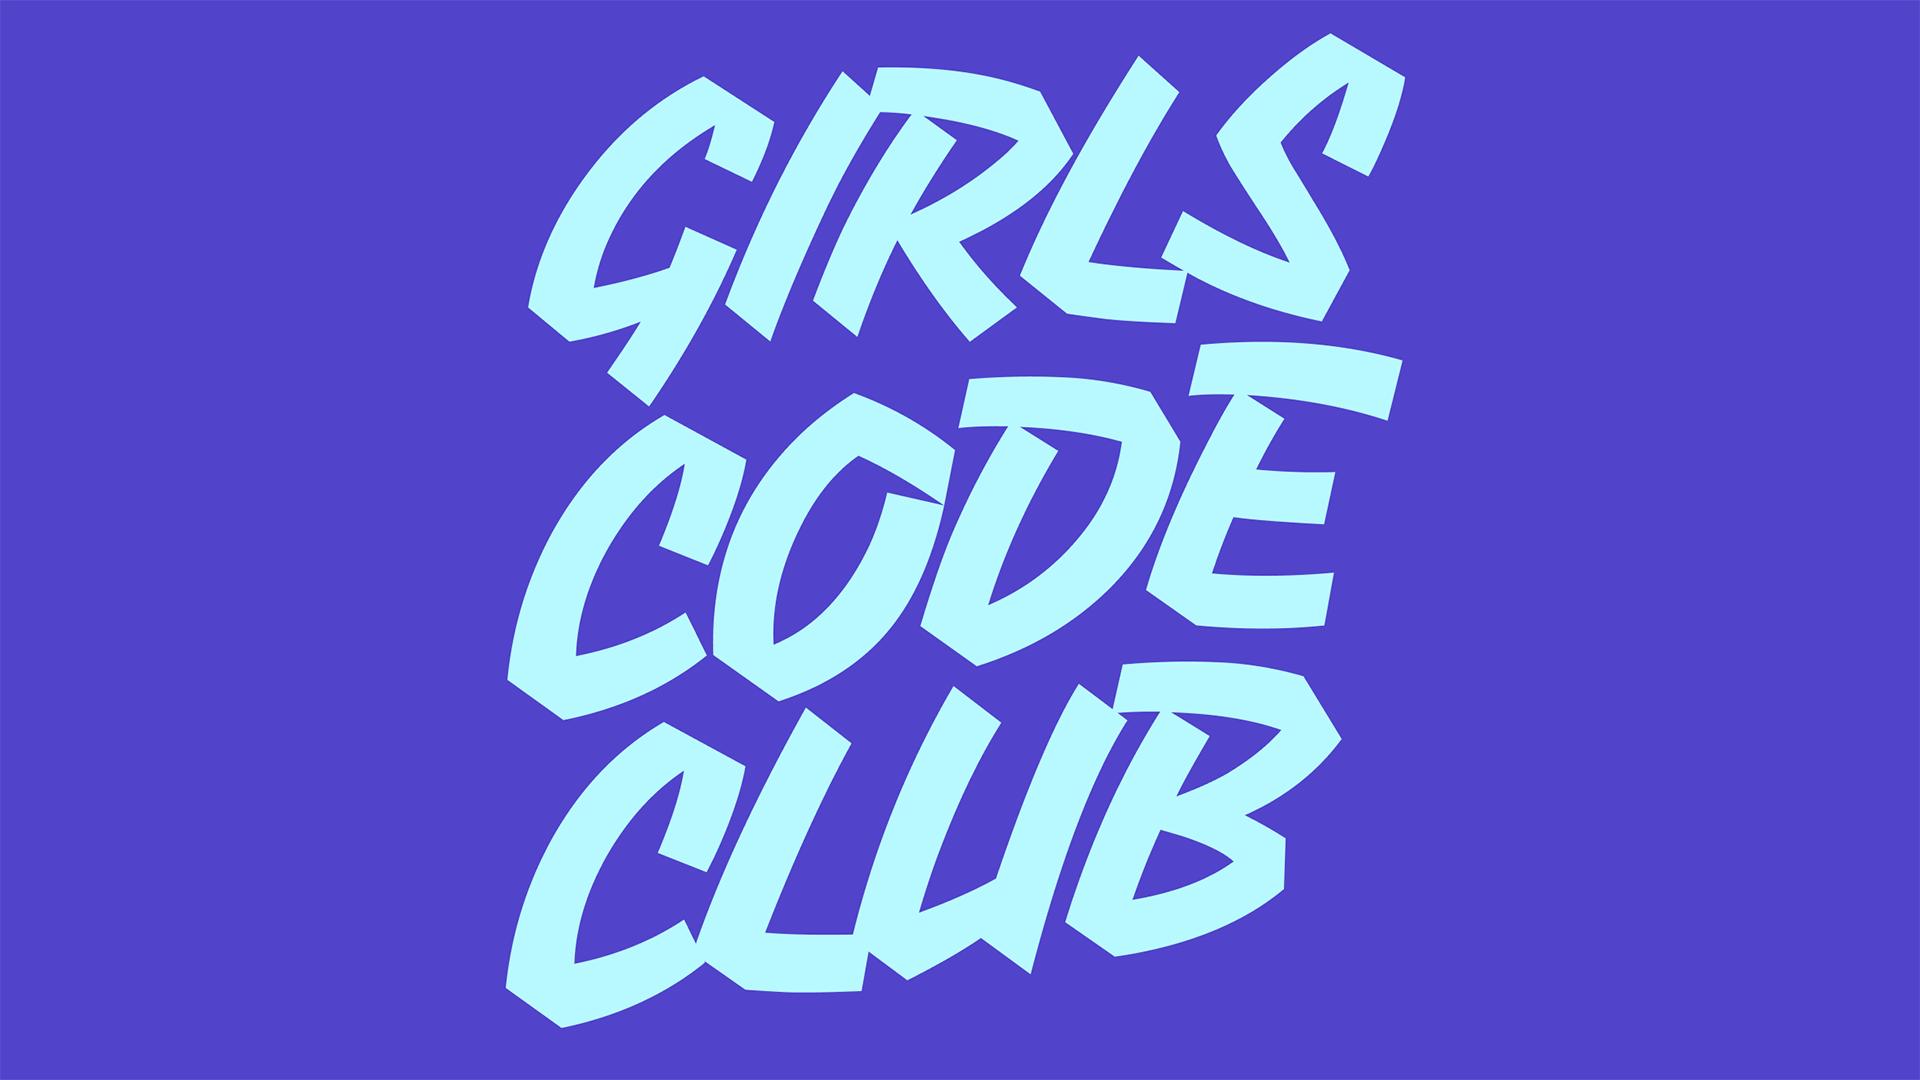 Logga för Girls Code Club